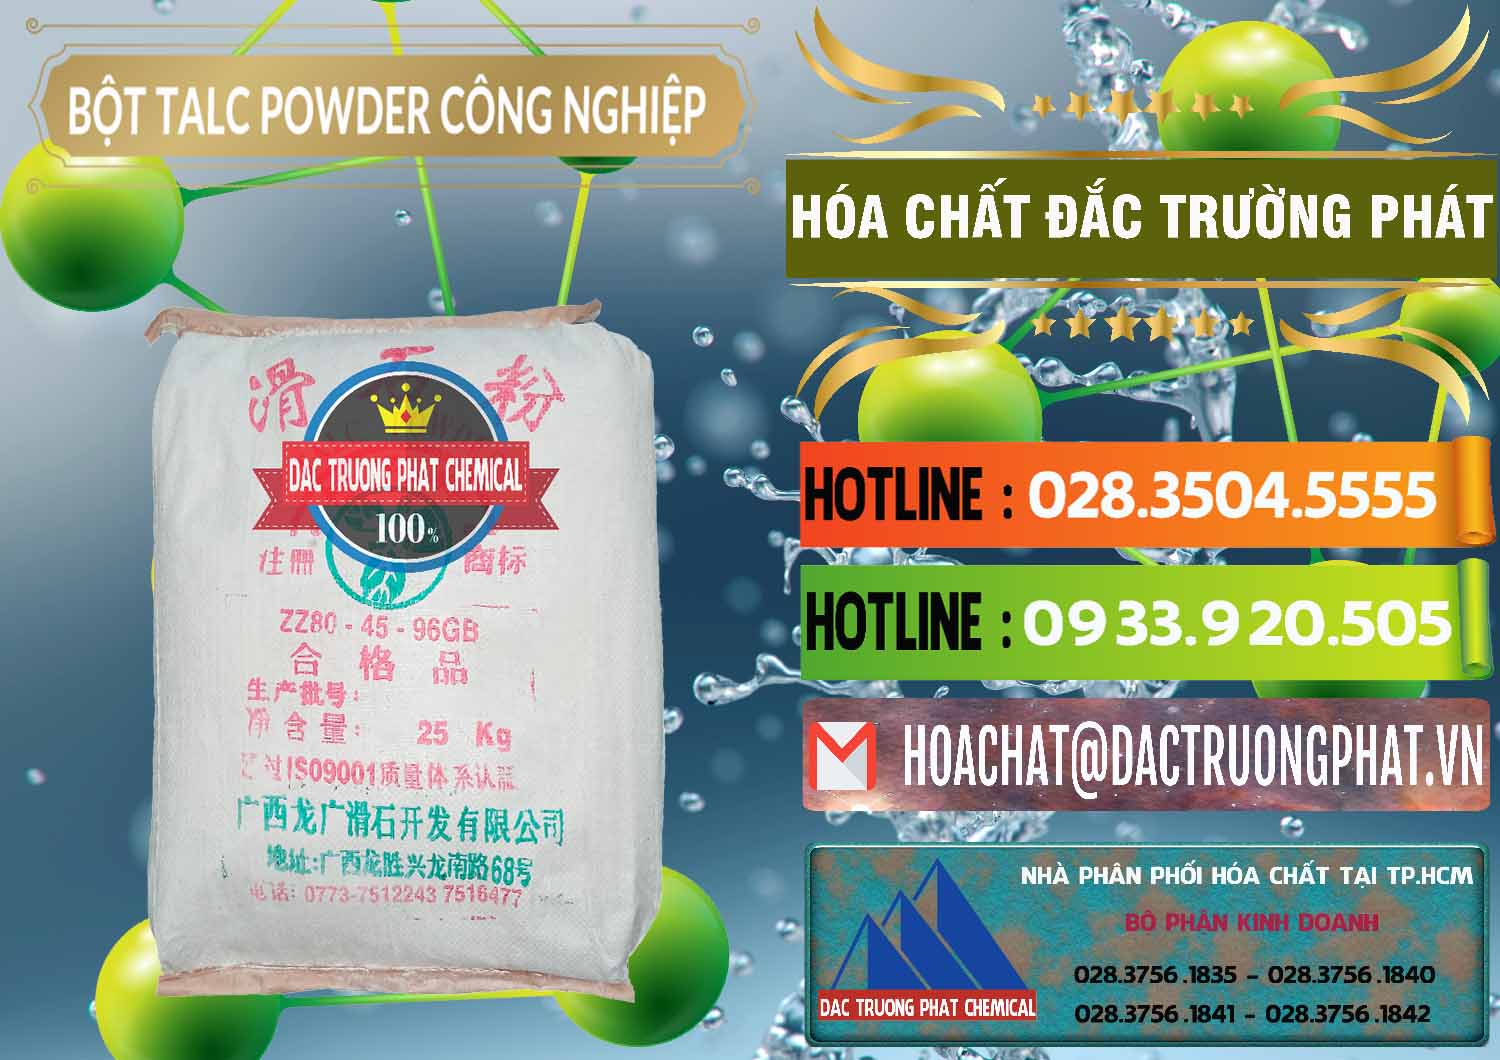 Nơi kinh doanh ( bán ) Bột Talc Powder Công Nghiệp Trung Quốc China - 0037 - Đơn vị bán ( phân phối ) hóa chất tại TP.HCM - cungcaphoachat.com.vn